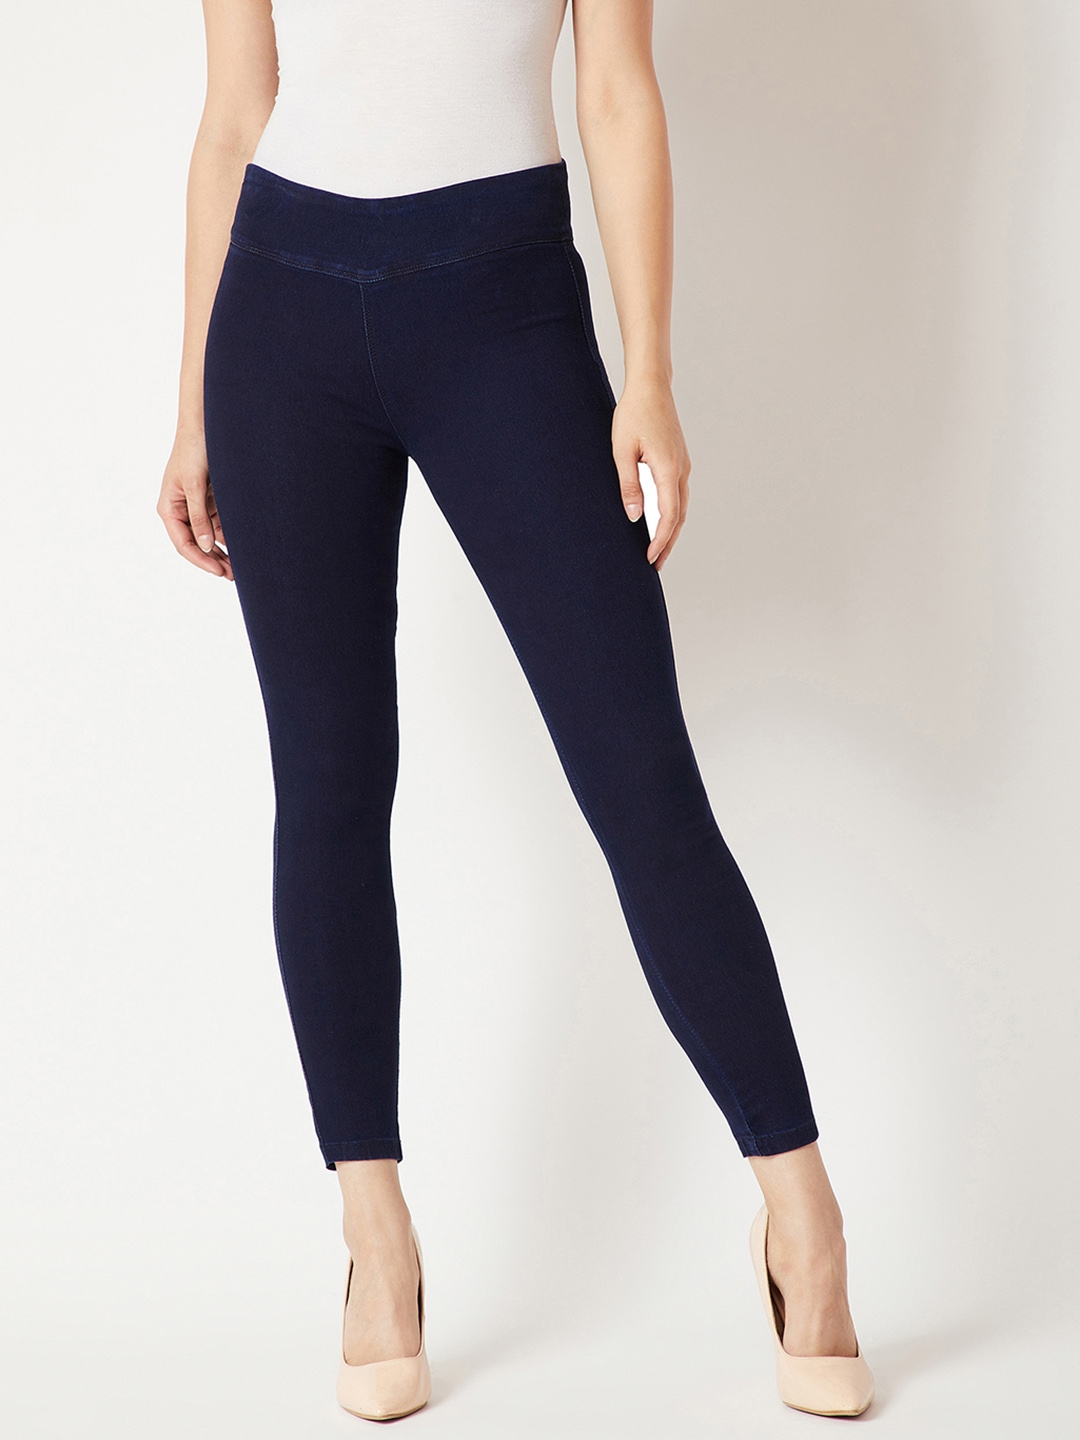 Buy Wahe-NOOR Women's Navy Blue Solid Skinny Fit Jeggings Online